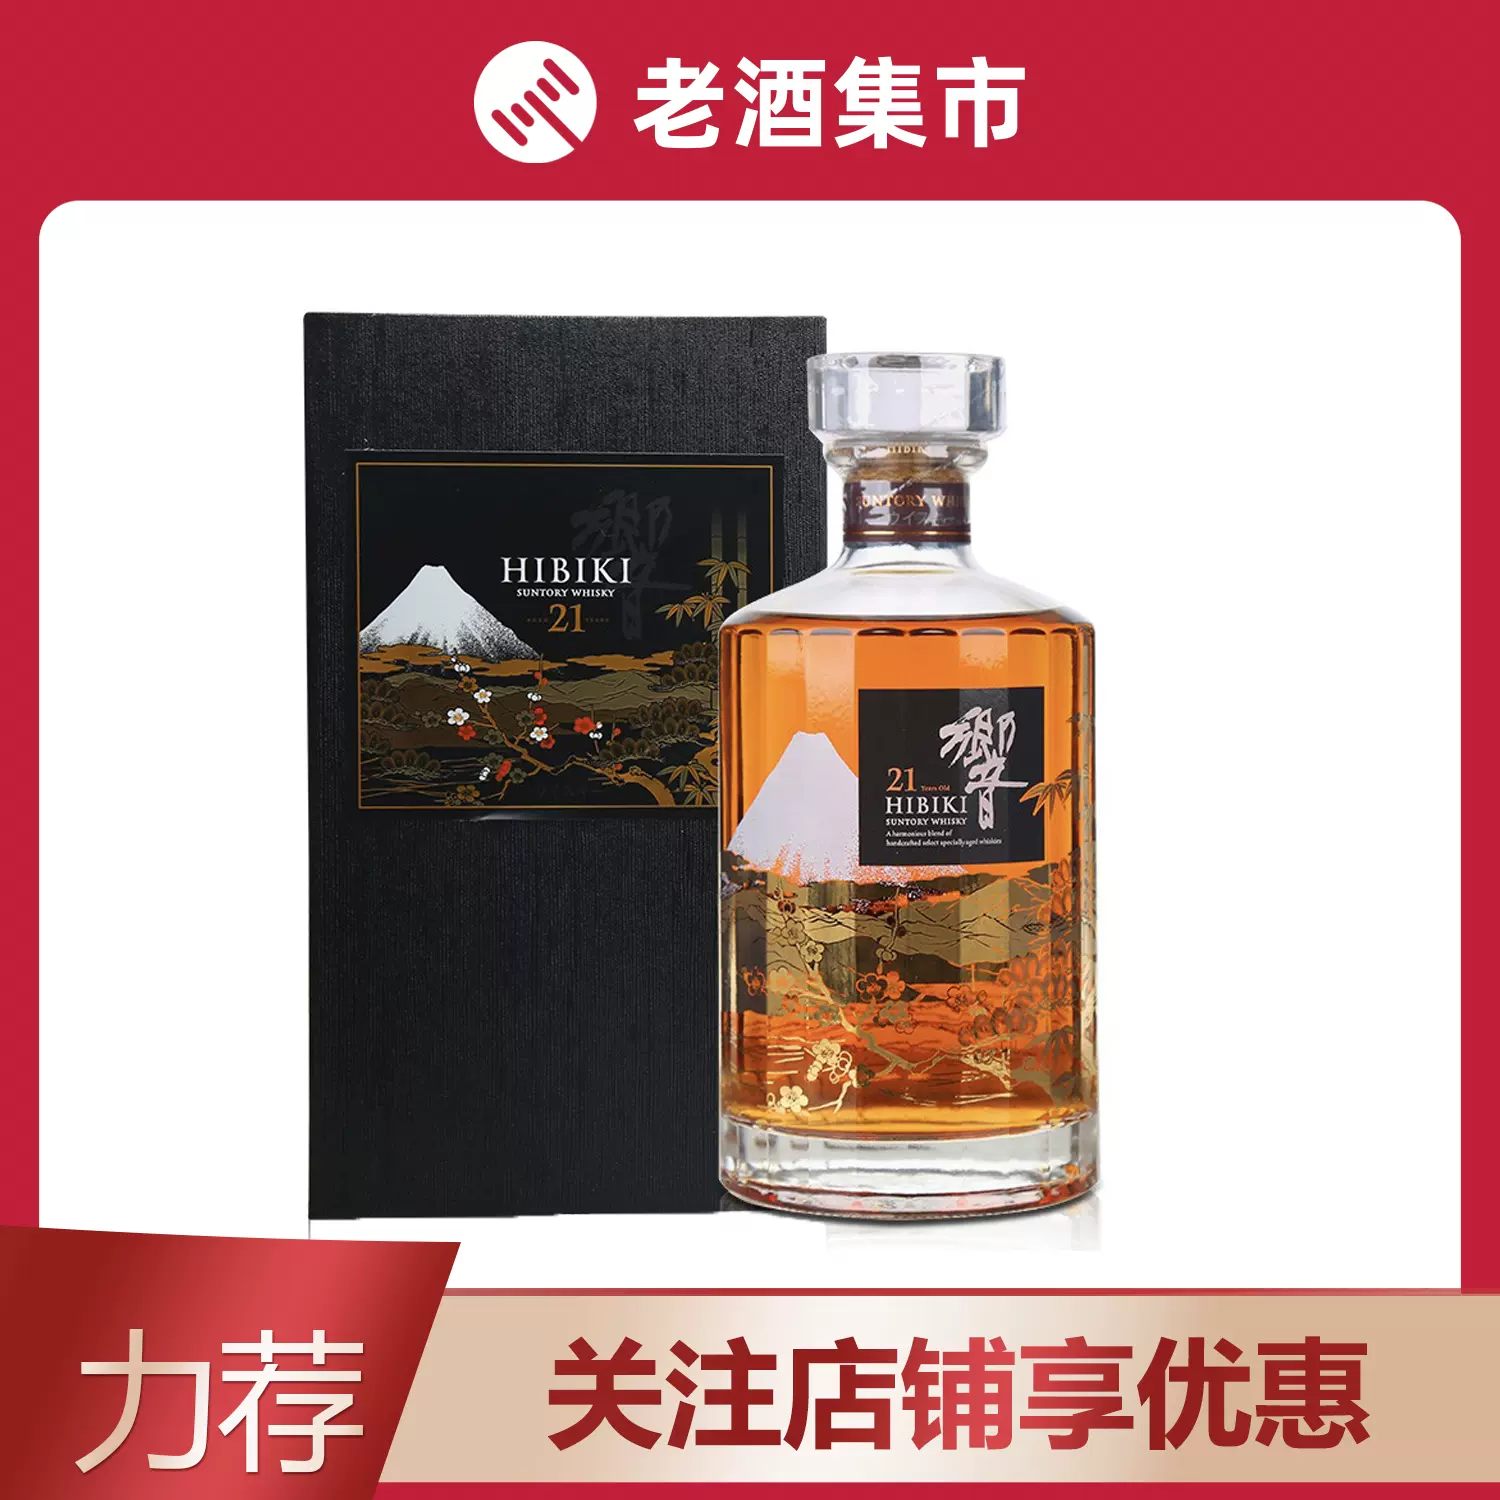 玖丰】1瓶日本三得利响21年樱花限量版威士忌43度700ml-Taobao